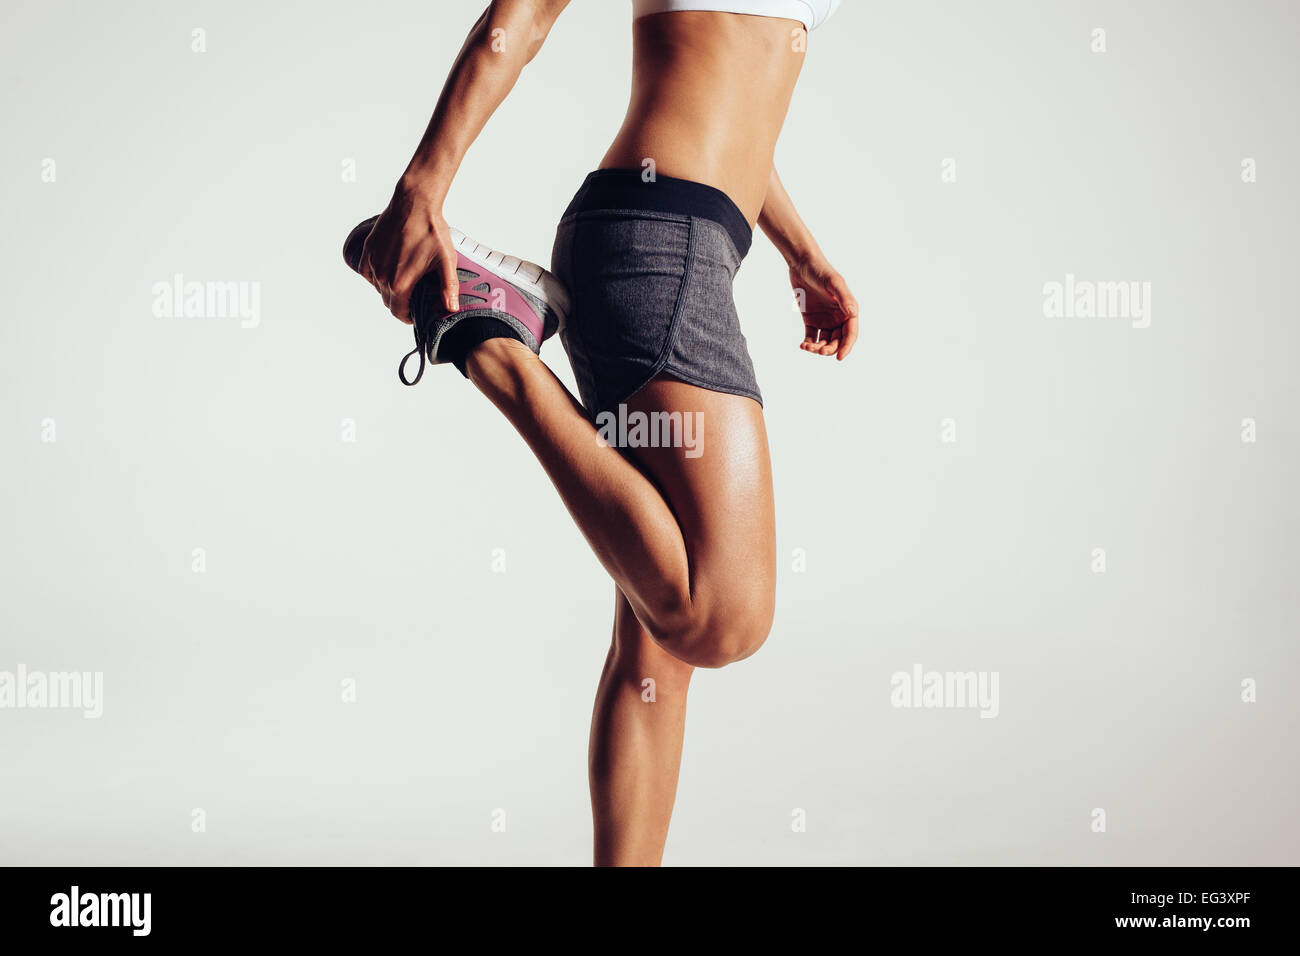 Portrait d'une femme de remise en forme s'étendant ses jambes contre fond gris. Monter coureuse faisant s'étend. Banque D'Images